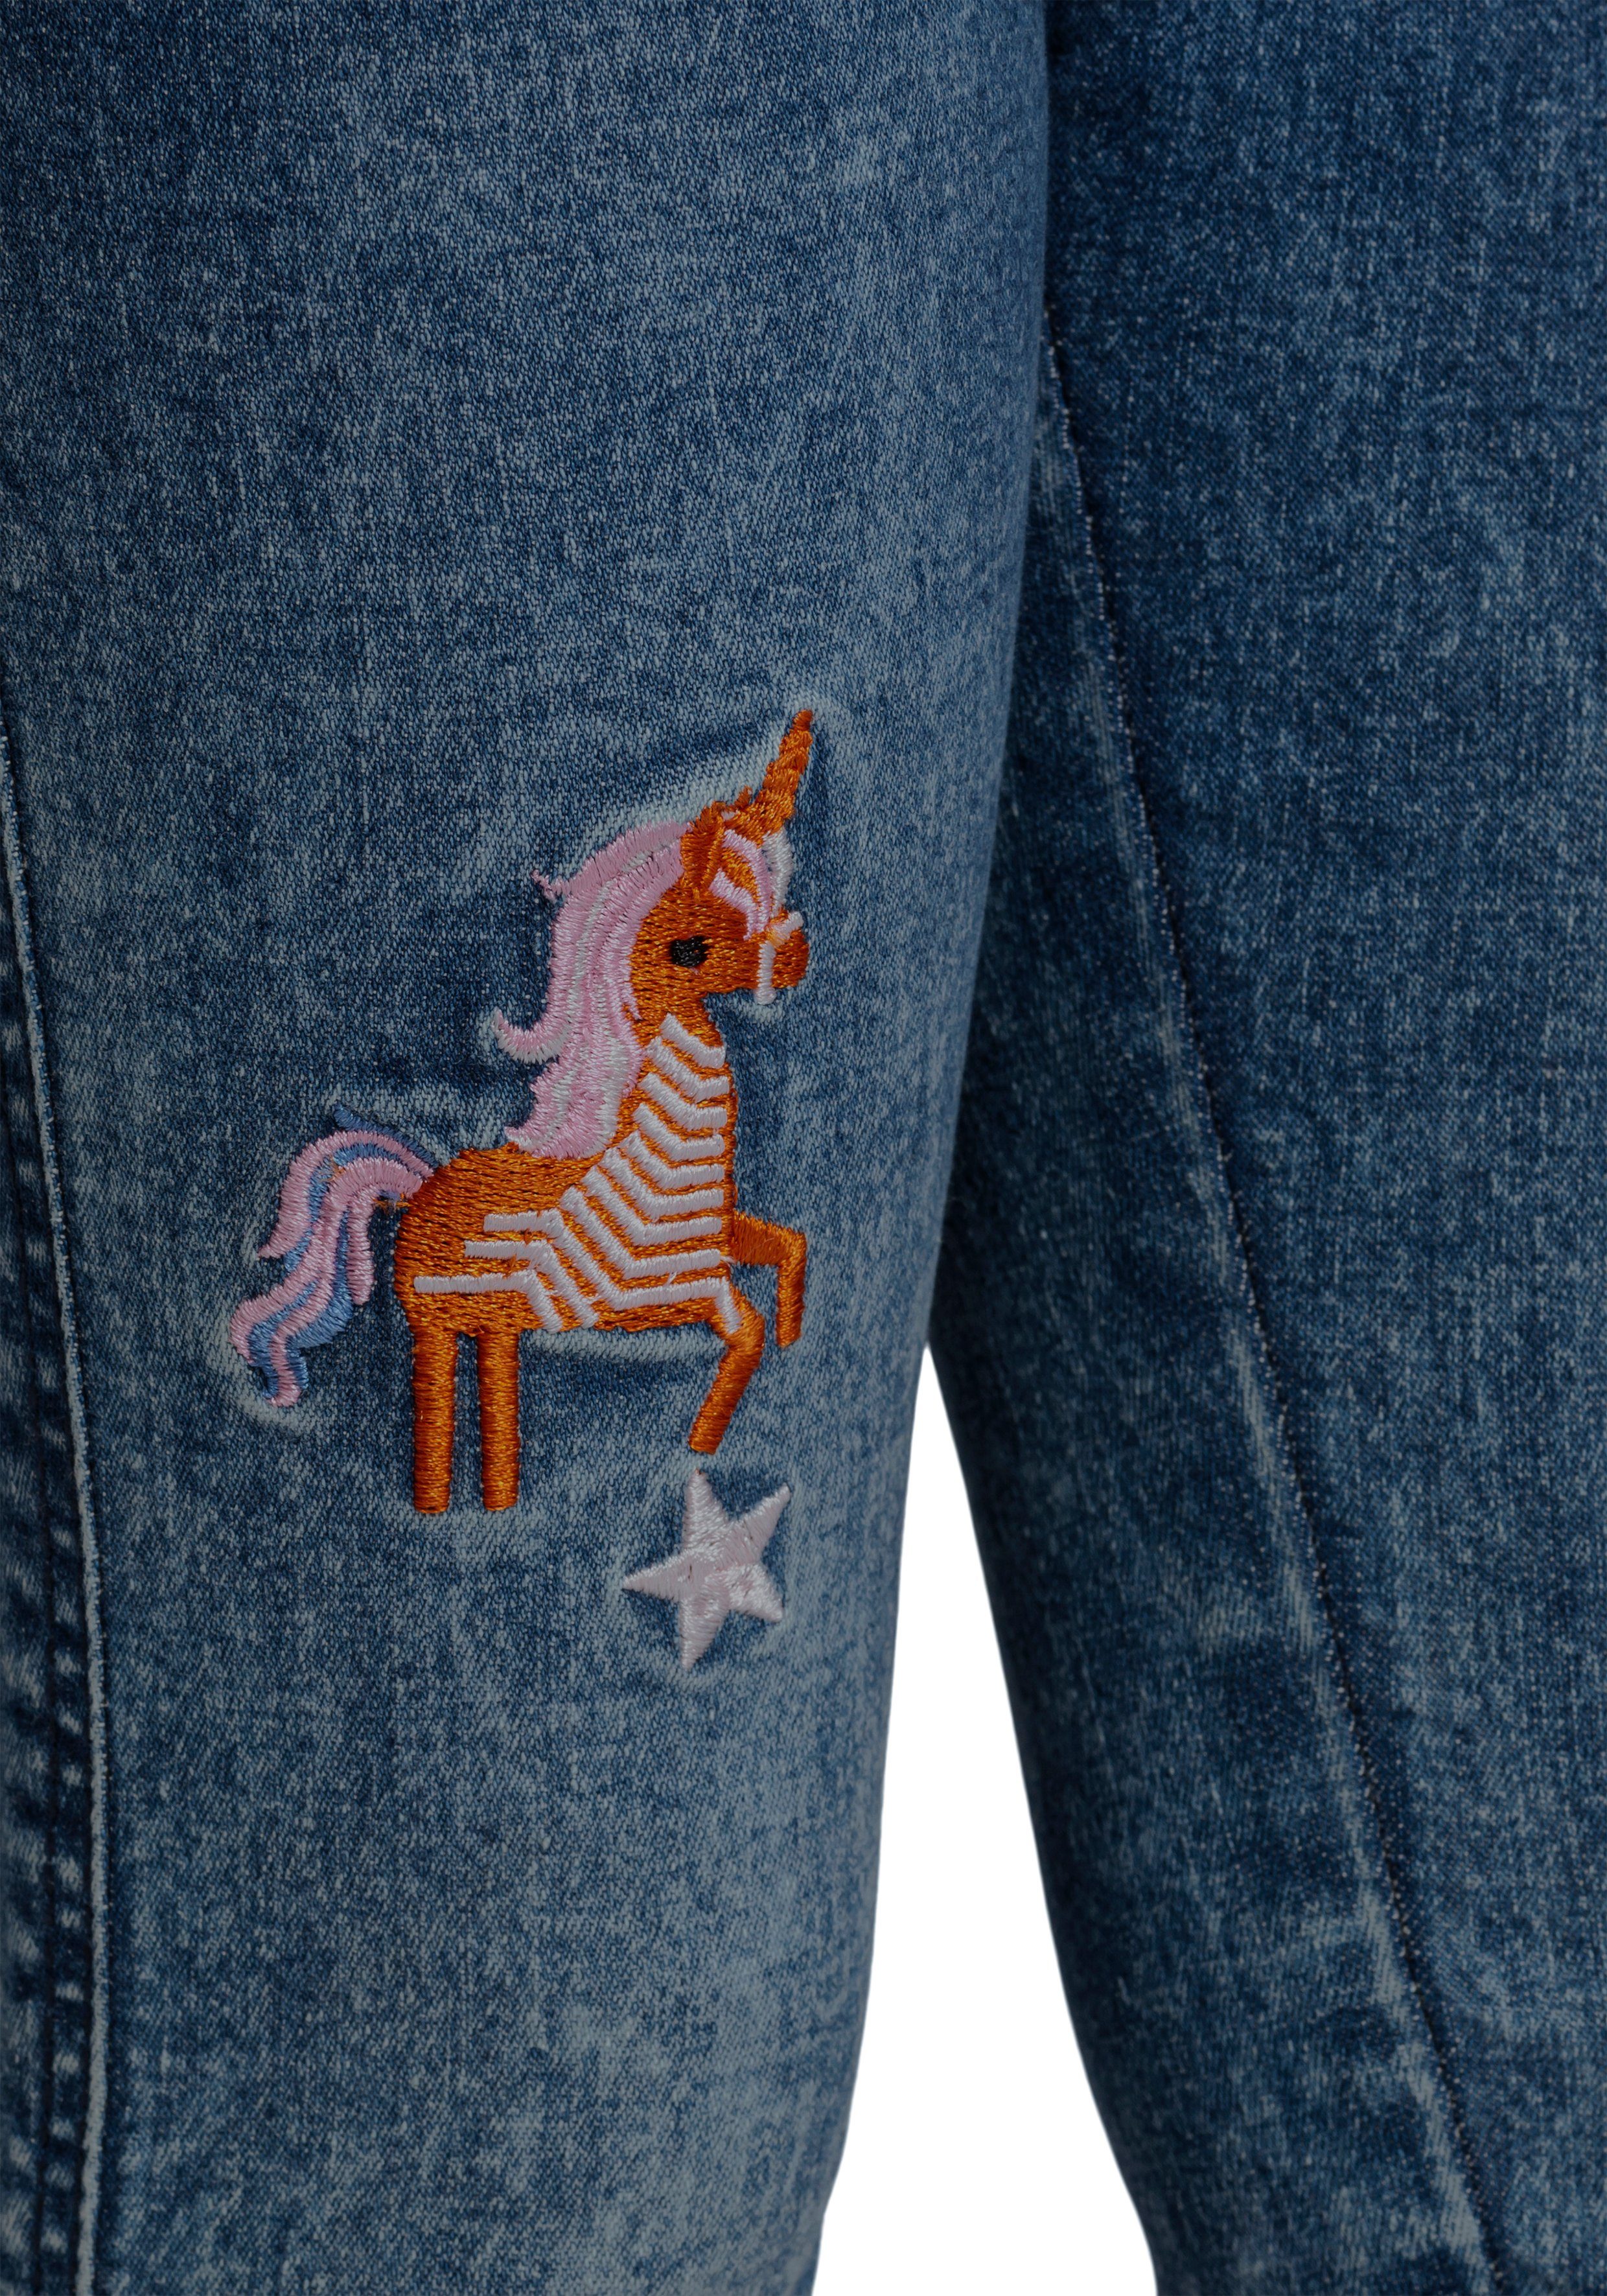 Stickerei mit KIDSWORLD toller Stretch-Jeans